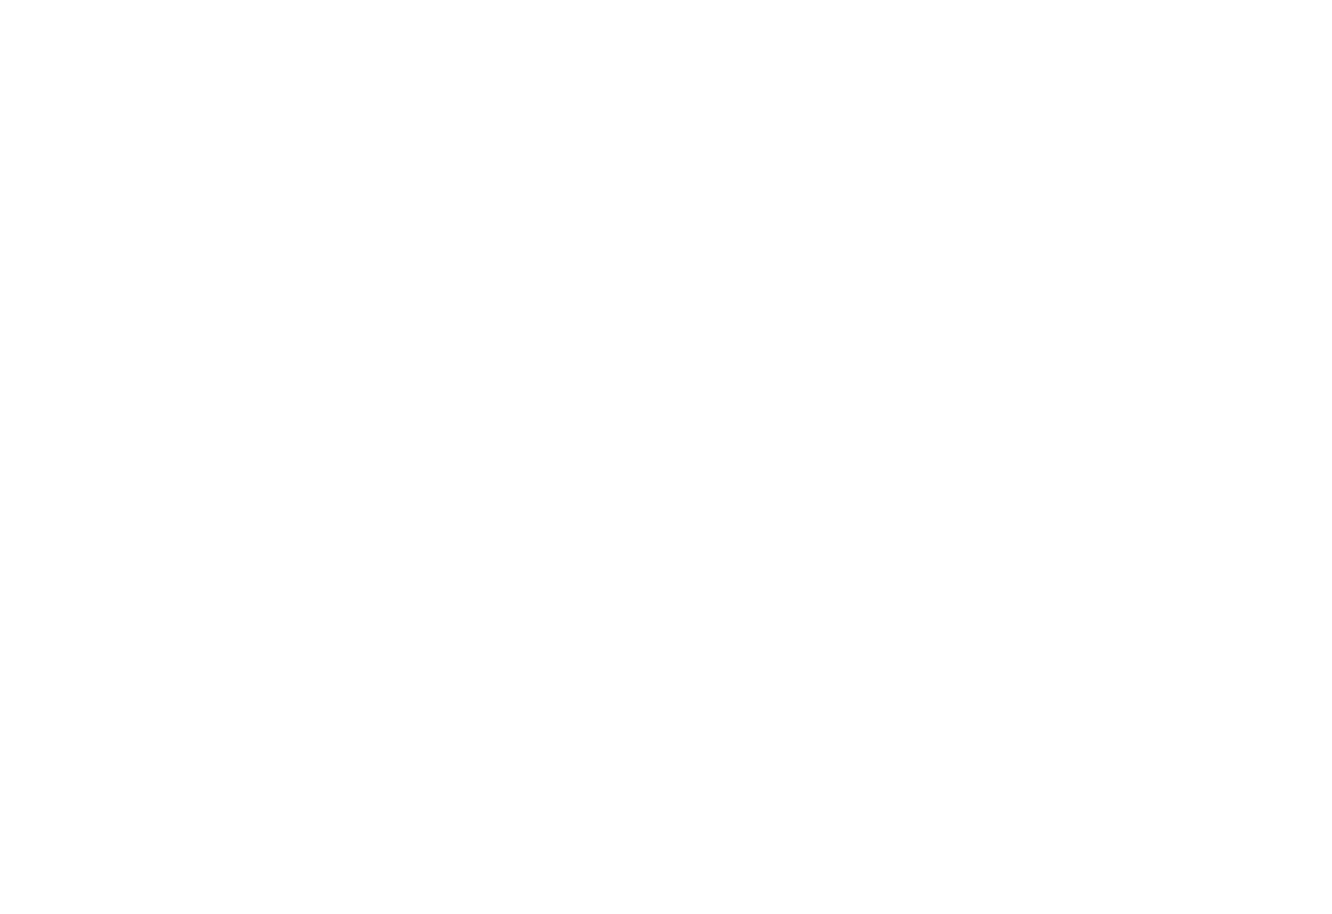 Design of Rear tipper trailer with hi-volume extender Dropsides